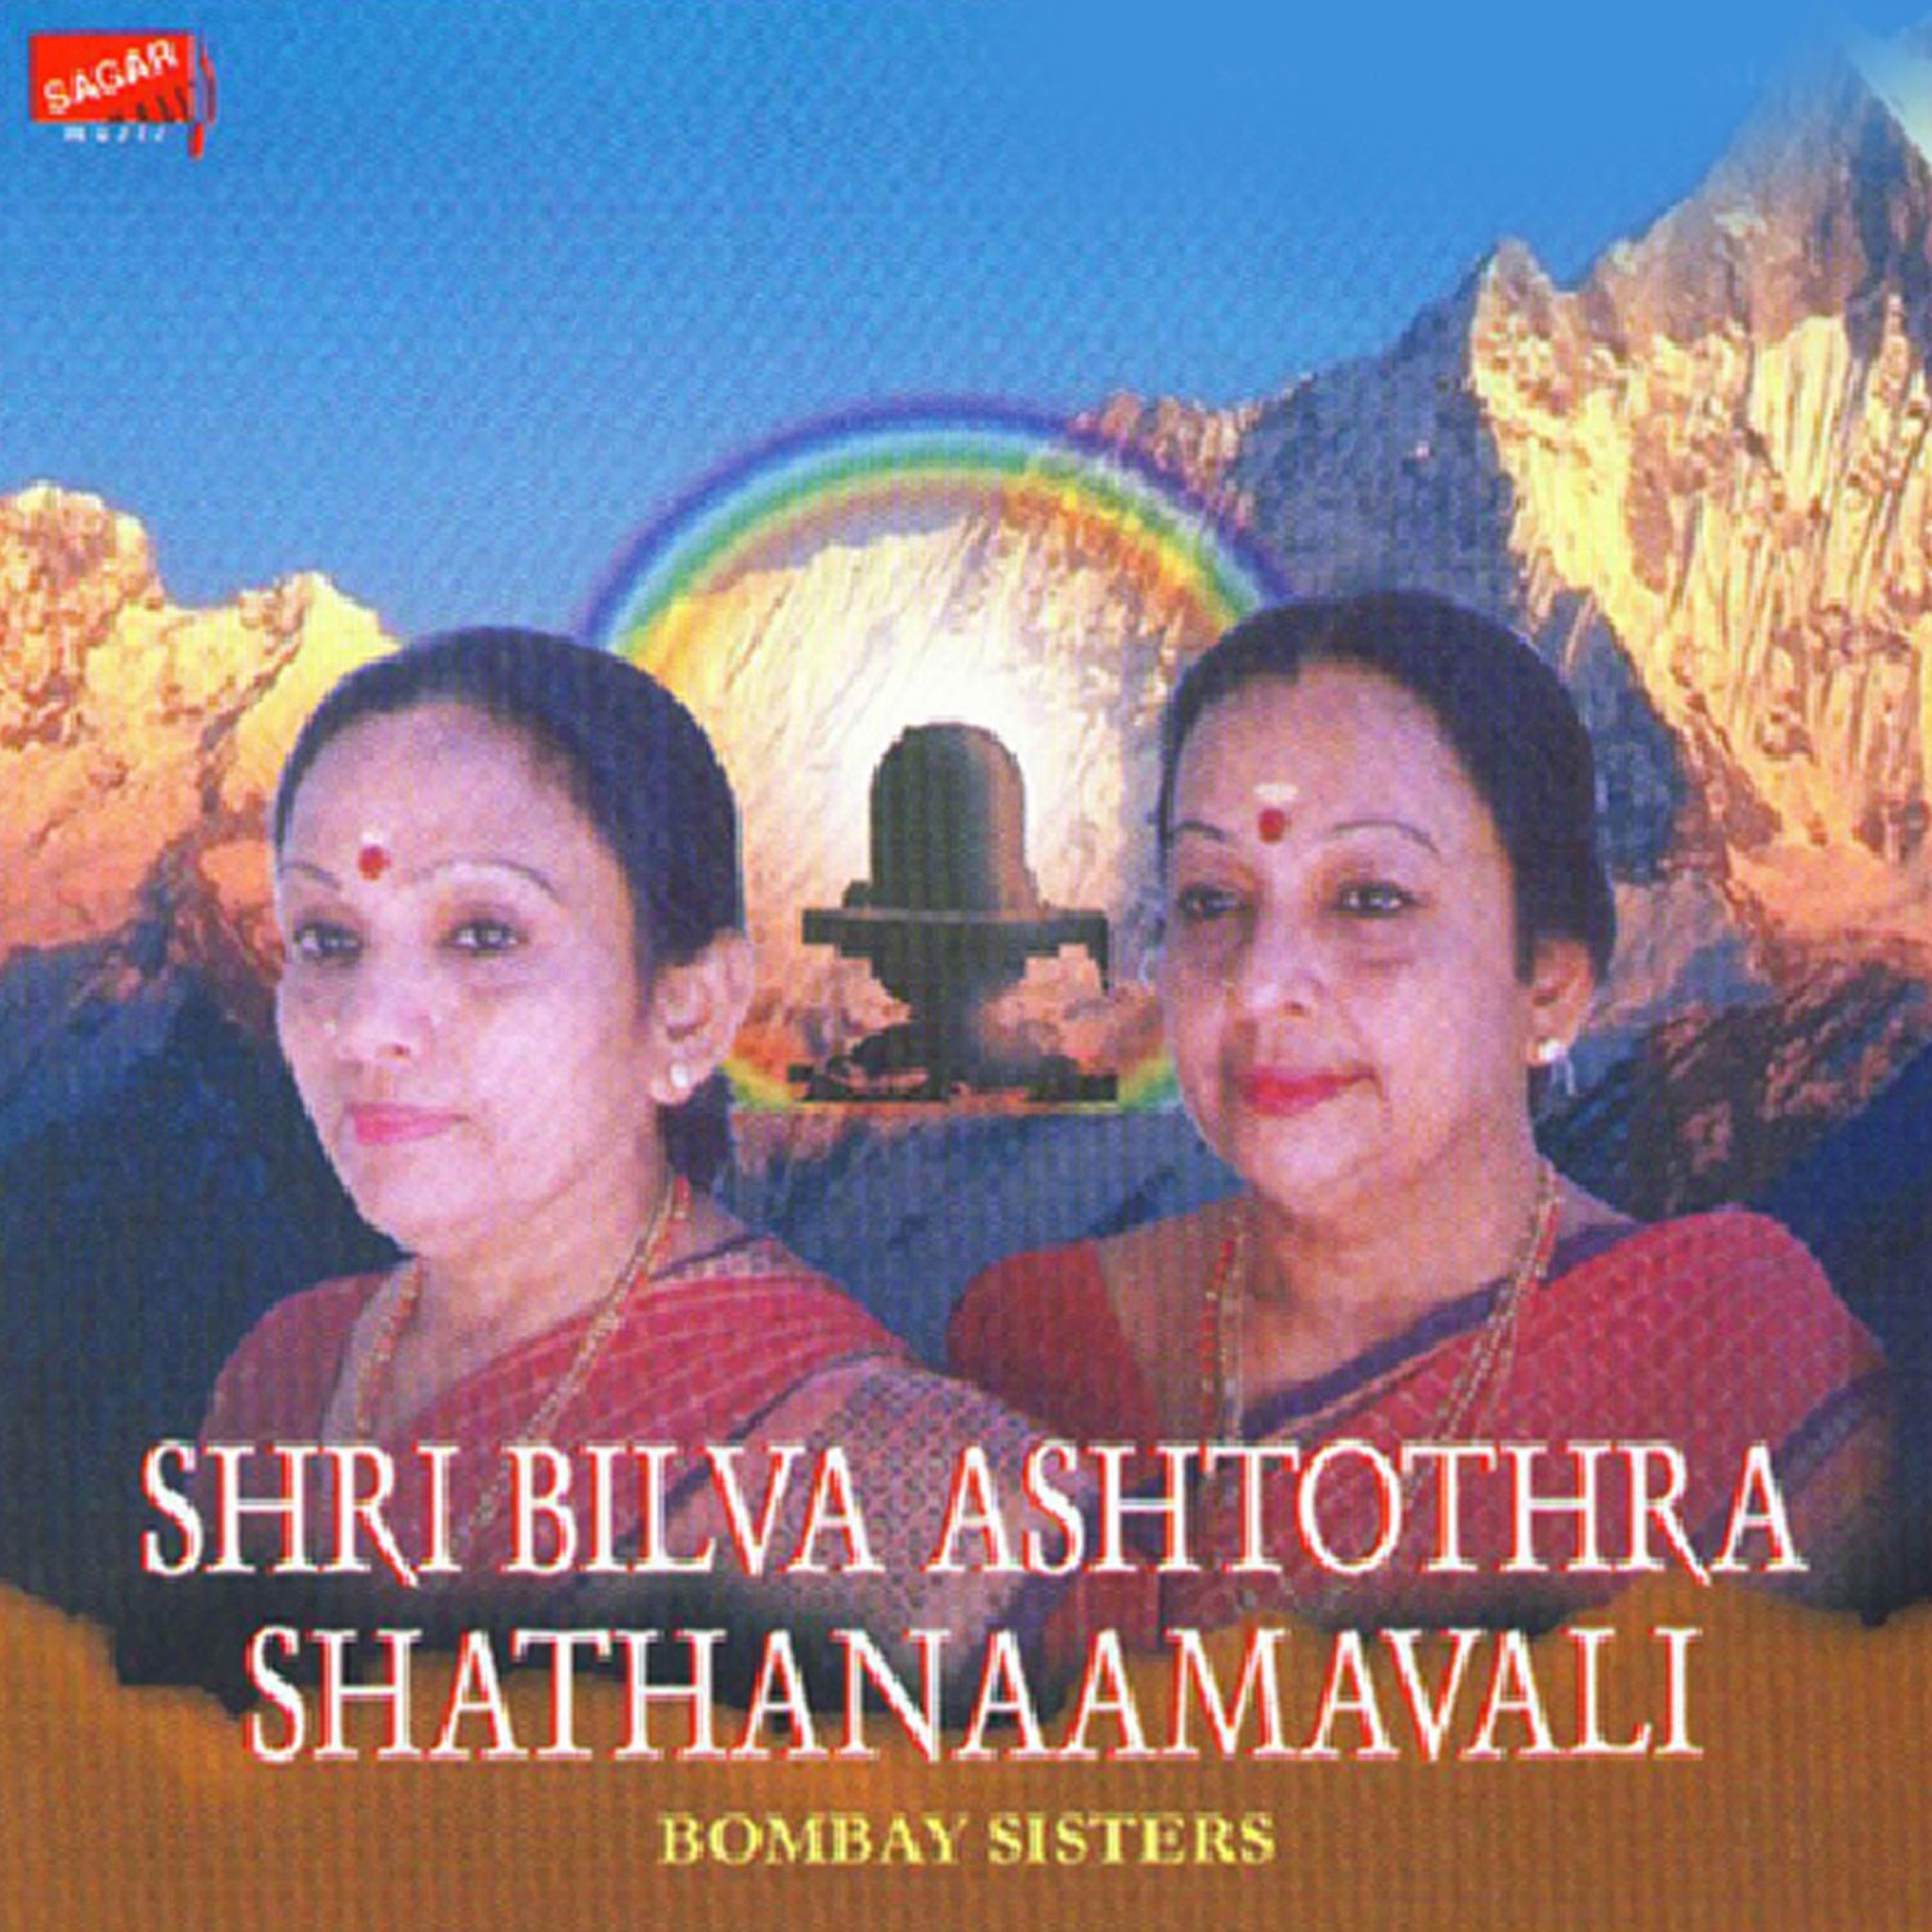 Shri Shiva Asthothra Shathanaamavali